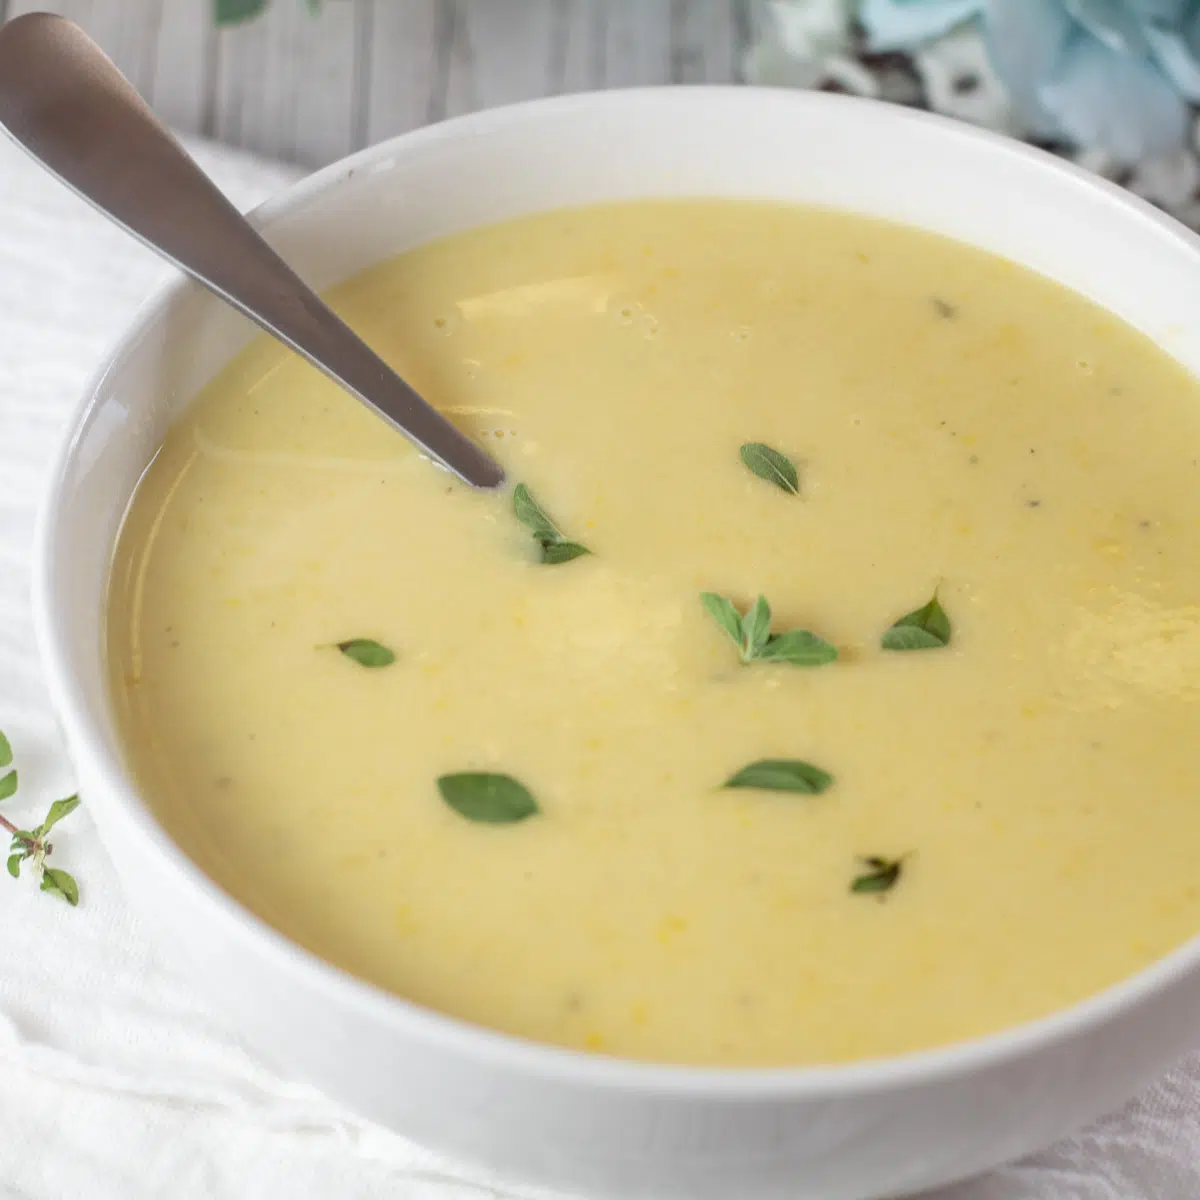 Čtvercový obrázek krémově žluté squashové polévky v bílé misce.